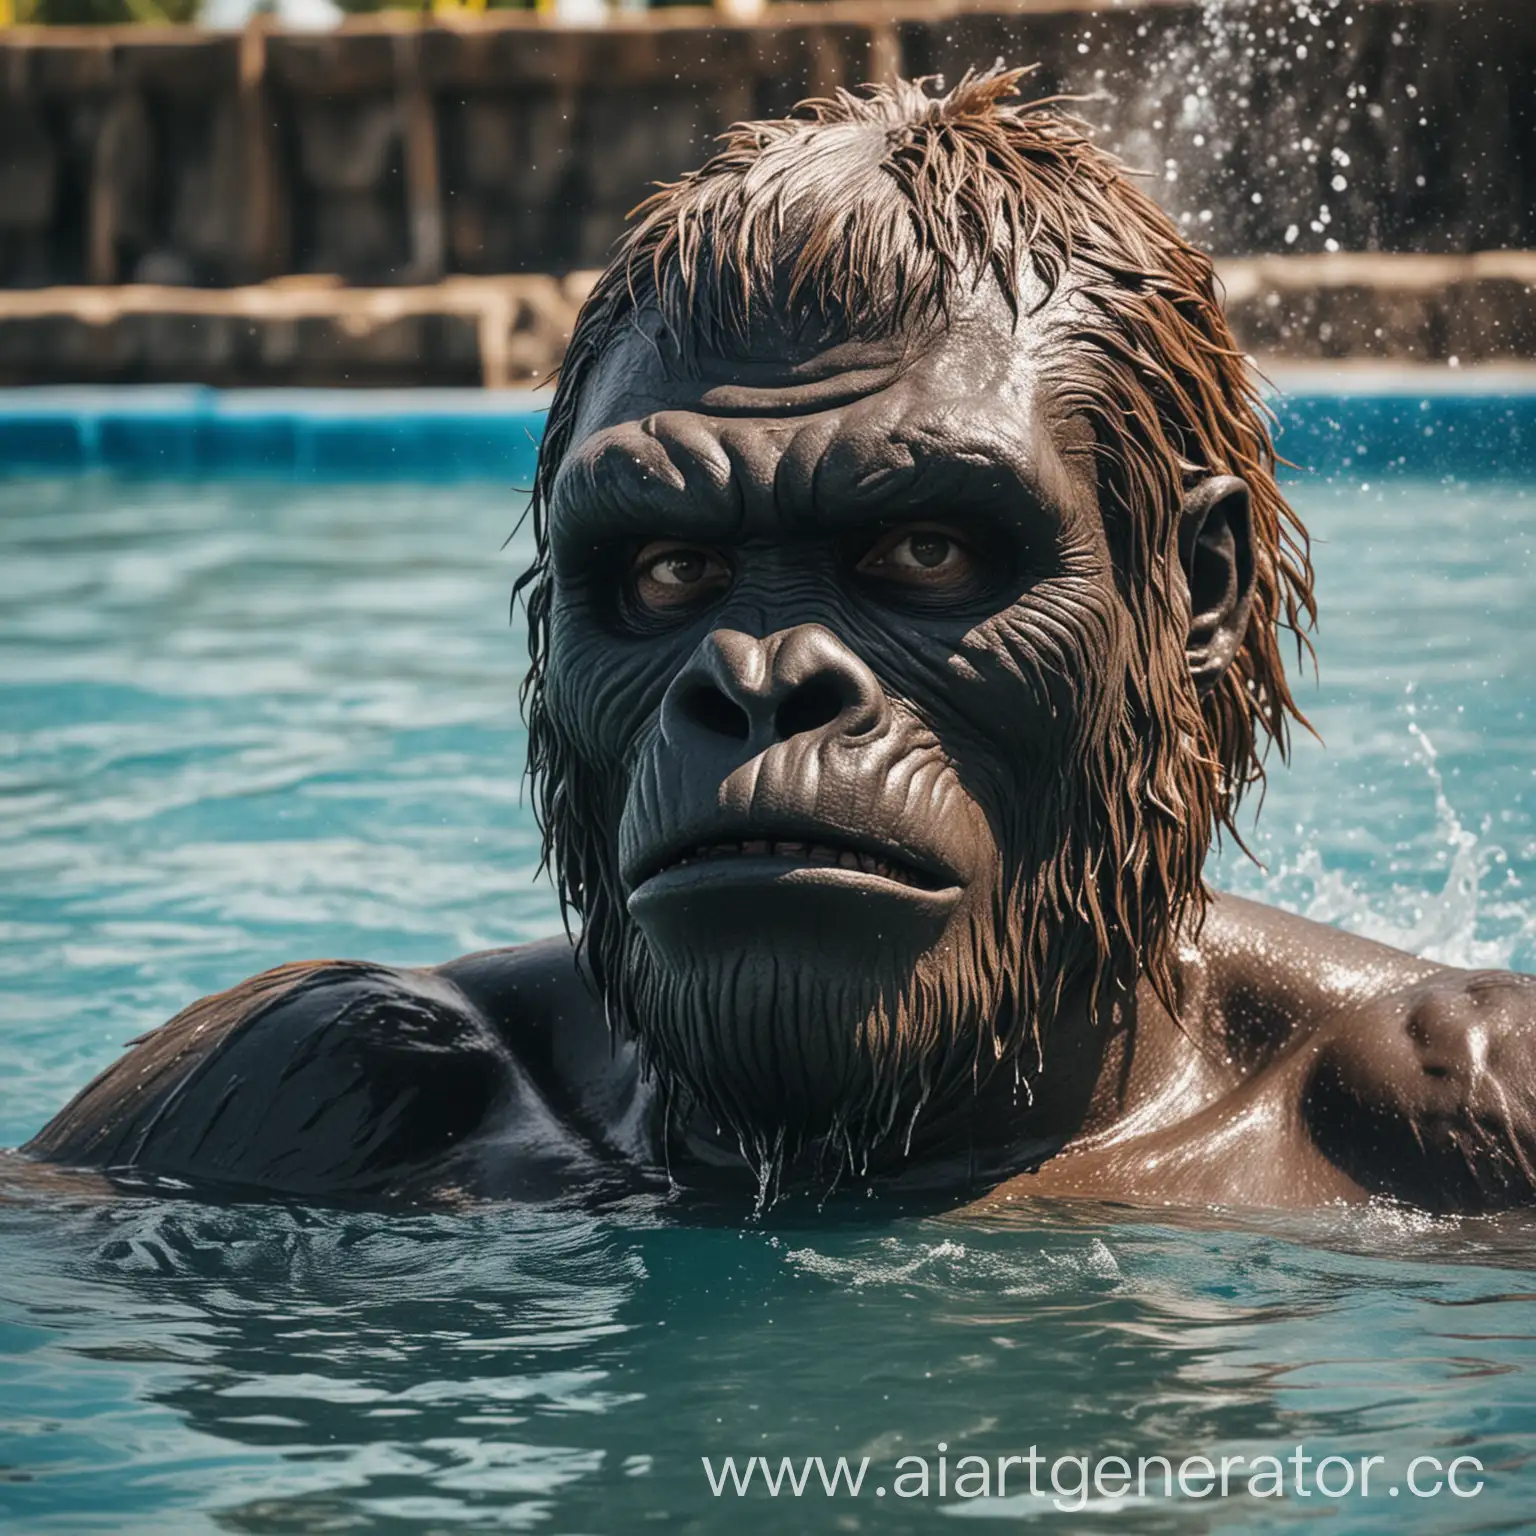 Мужчина в маске гориллы, аквапарк, вода